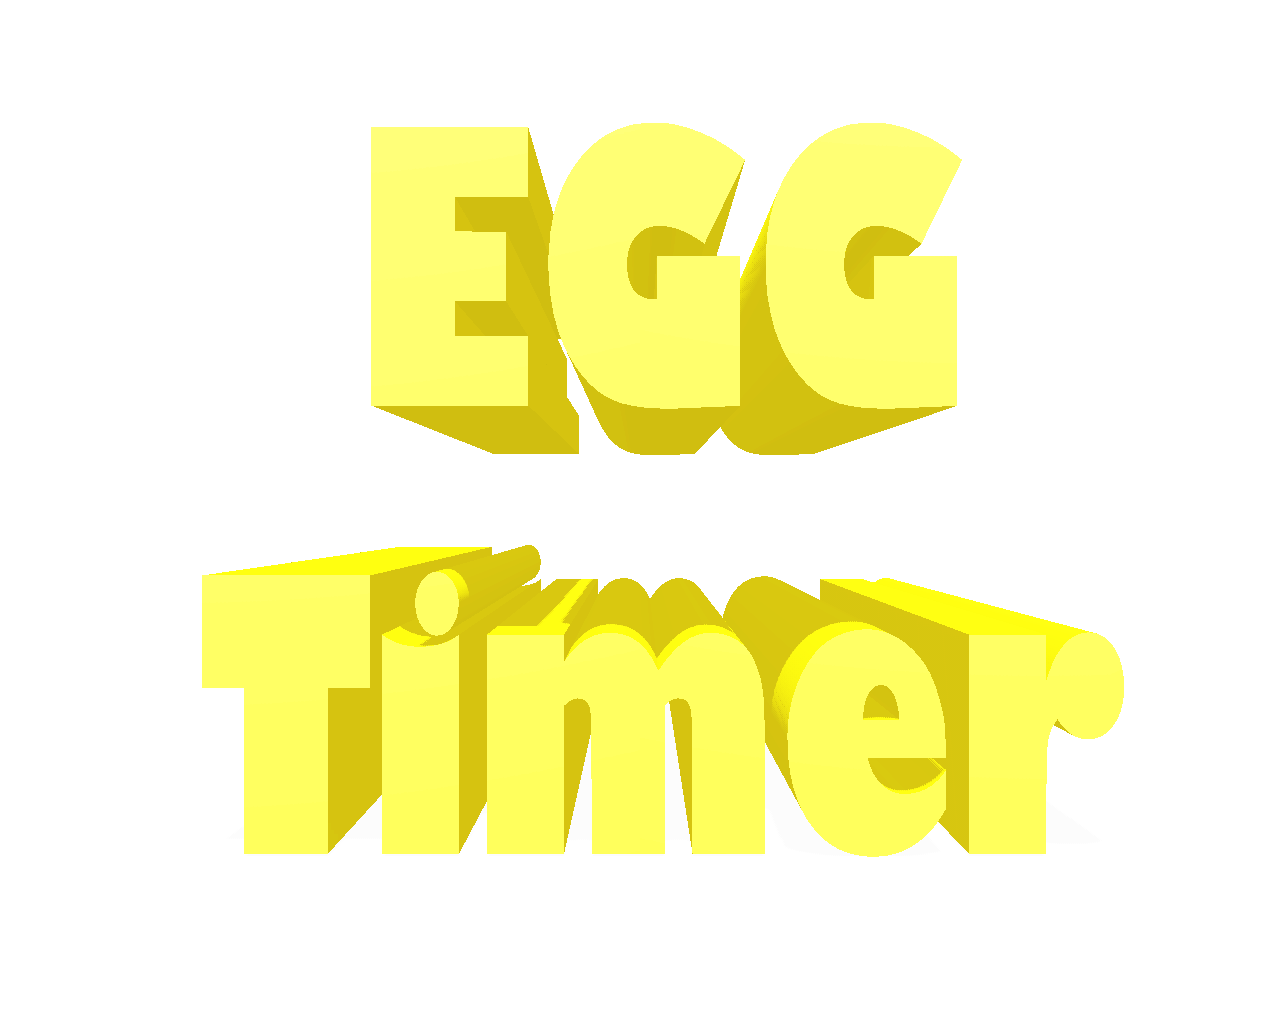 egg_timer_background.png